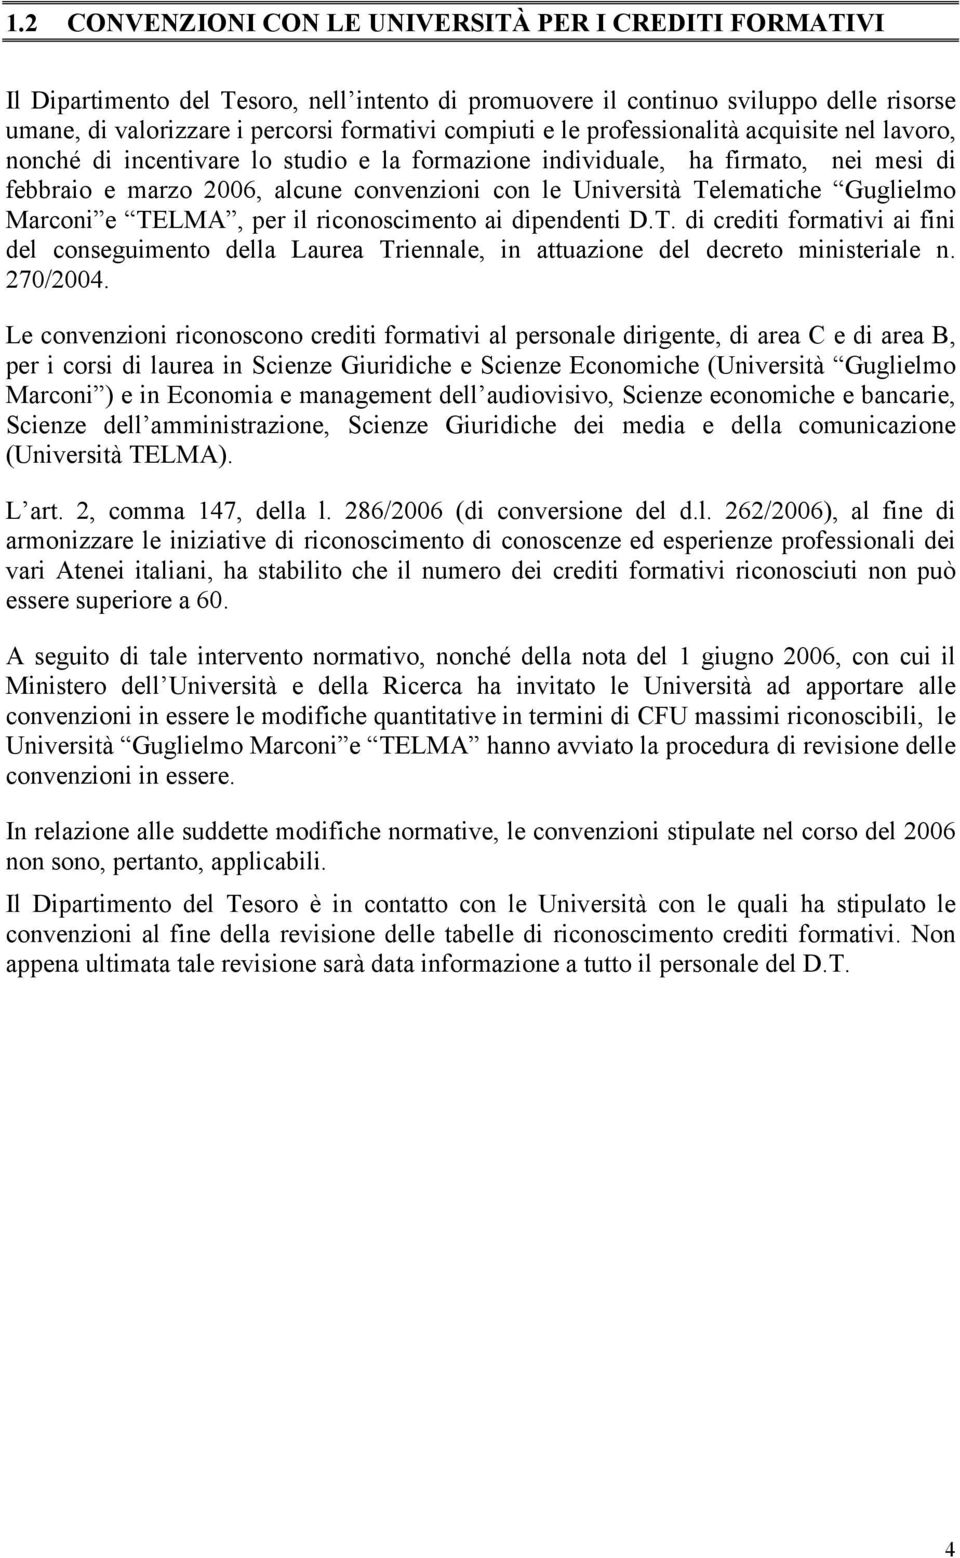 Guglielmo Marconi e TELMA, per il riconoscimento ai dipendenti D.T. di crediti formativi ai fini del conseguimento della Laurea Triennale, in attuazione del decreto ministeriale n. 270/2004.